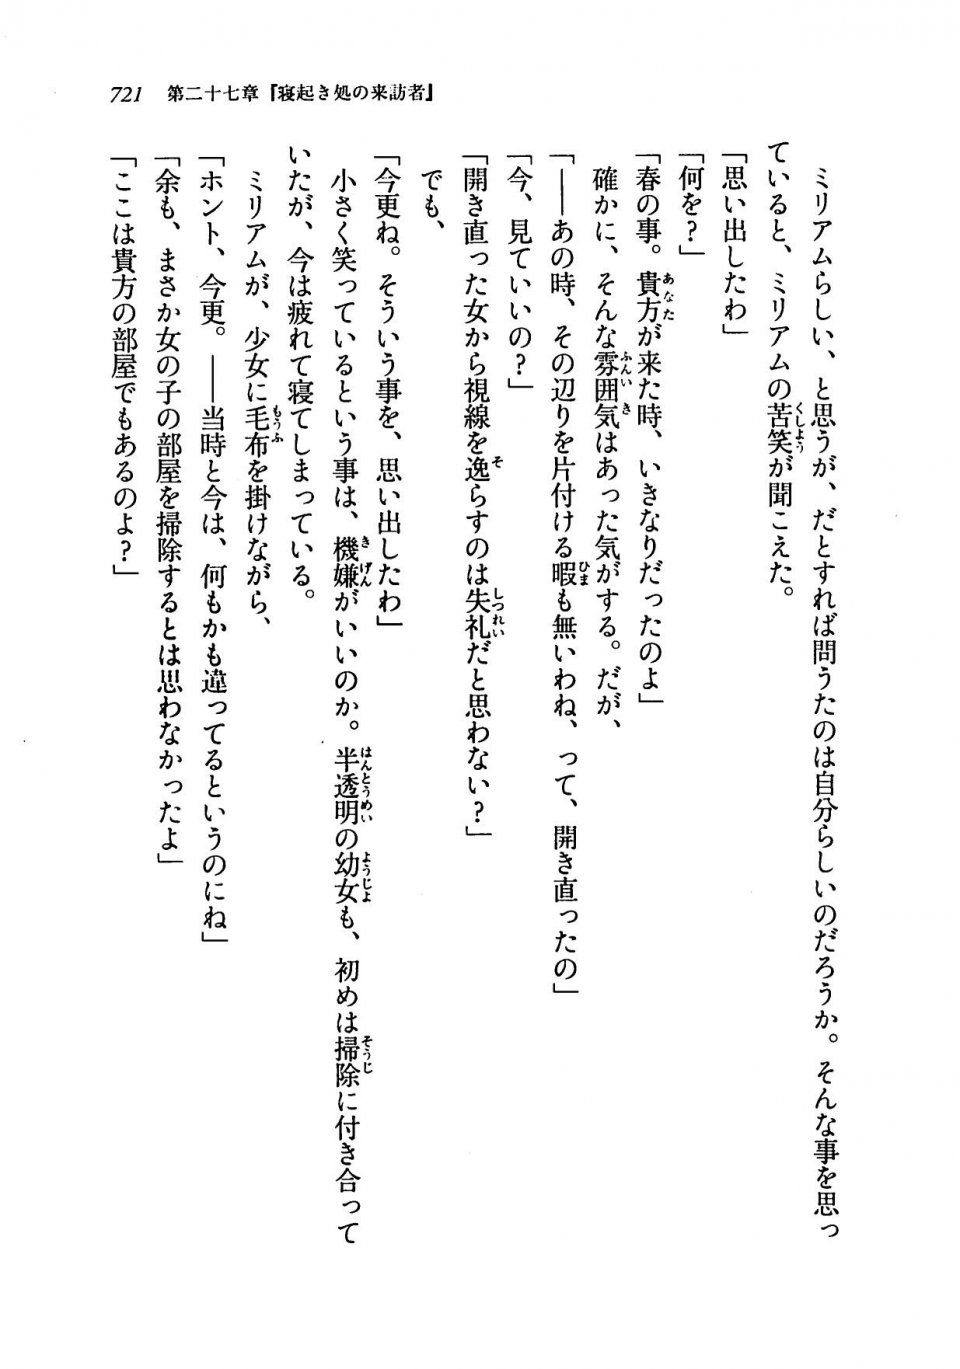 Kyoukai Senjou no Horizon LN Vol 19(8A) - Photo #721